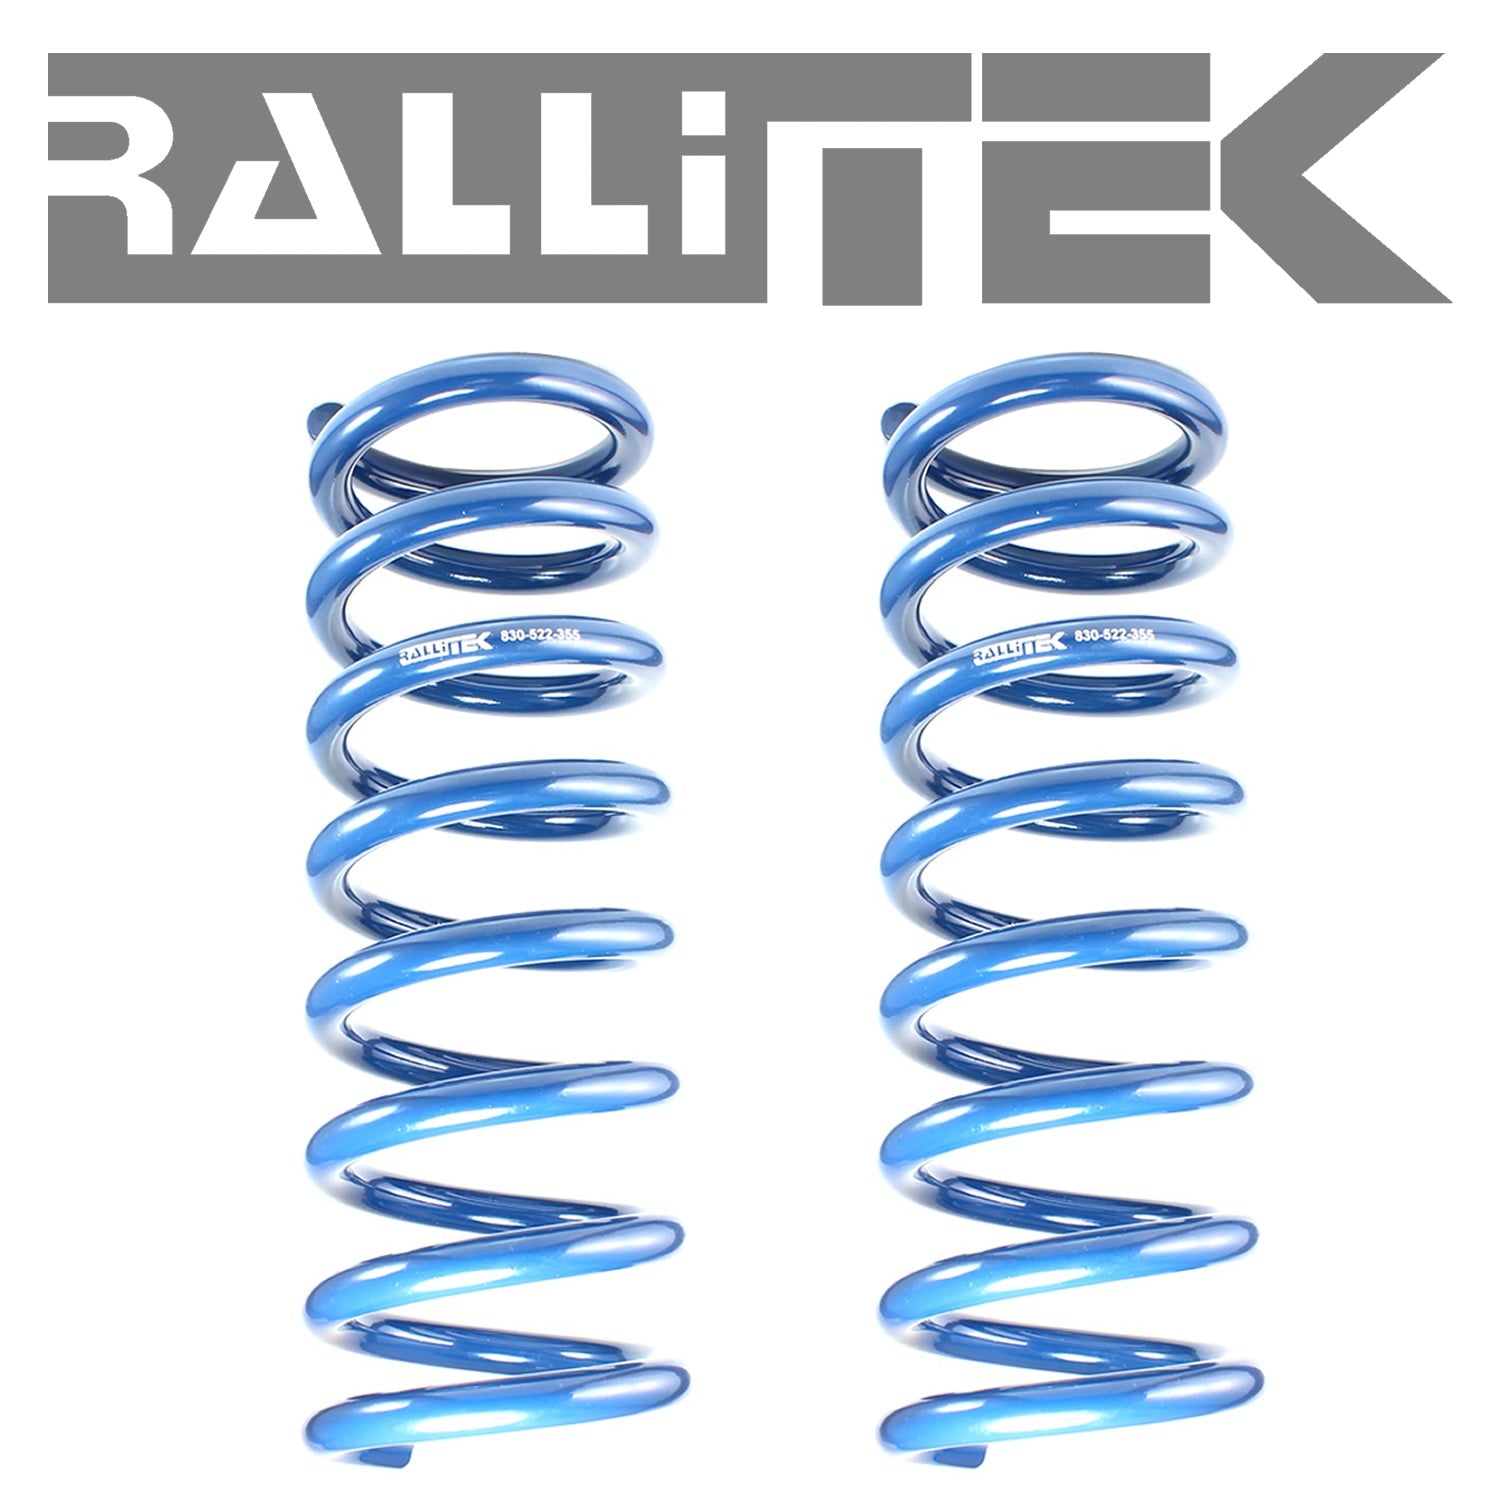 RalliTEK 0.4" Rear Overload Springs & OEM Struts Assembled - Outback 2010-2014